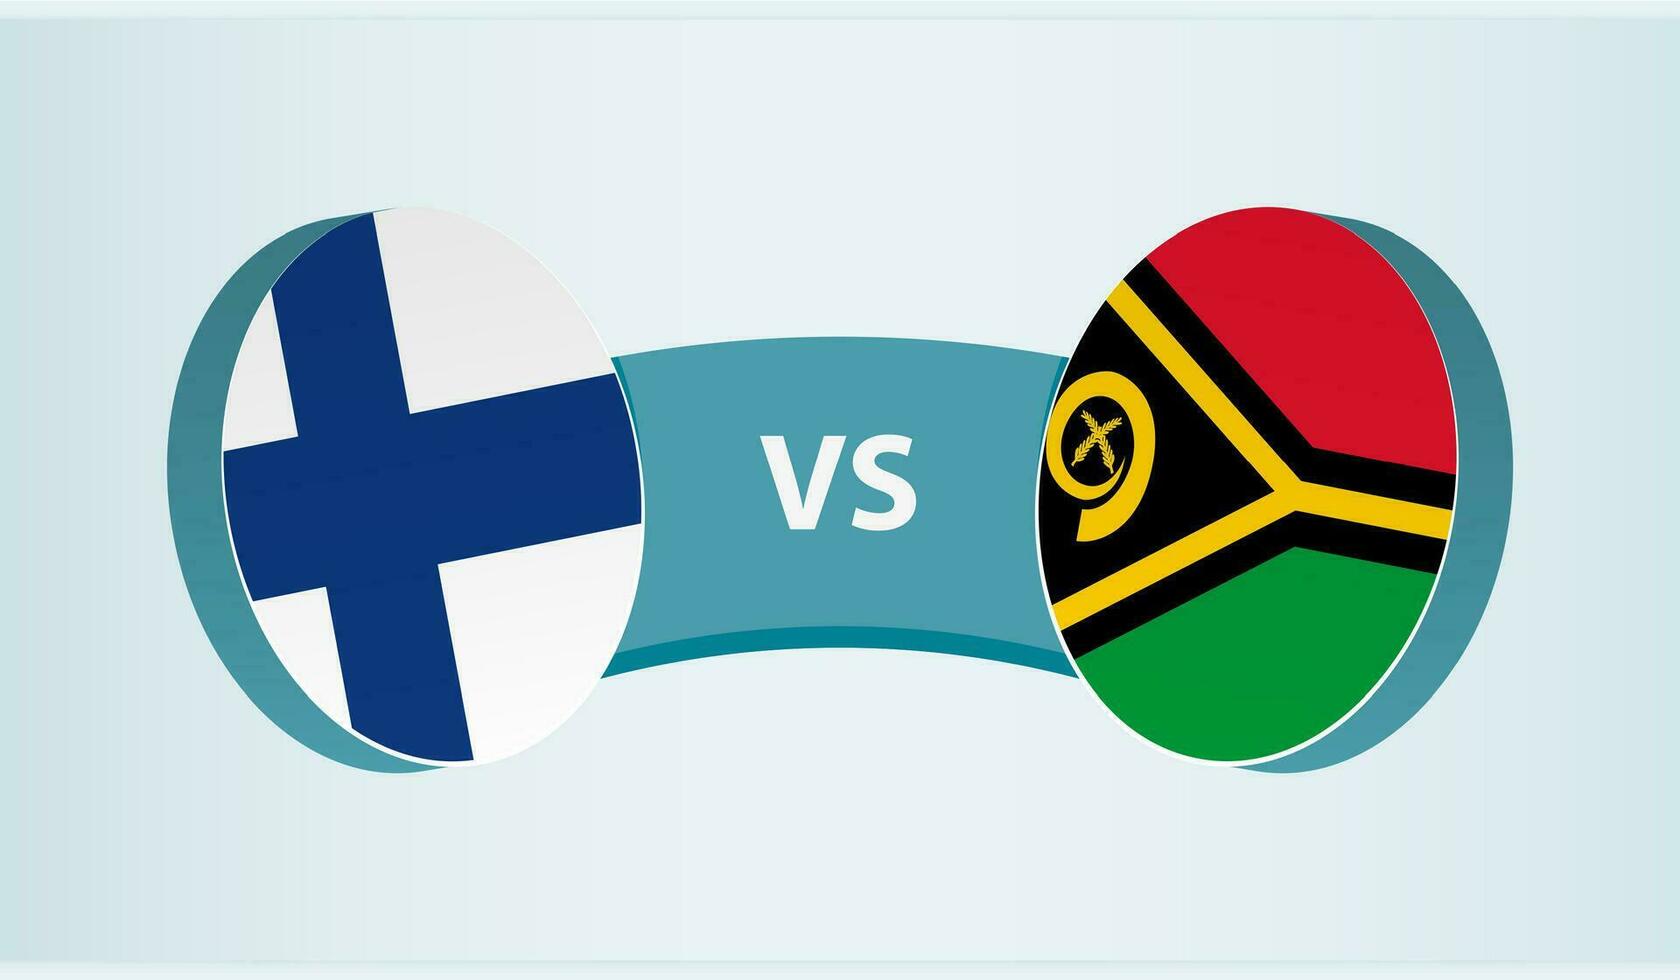 Finland versus Vanuatu, team sports competition concept. vector